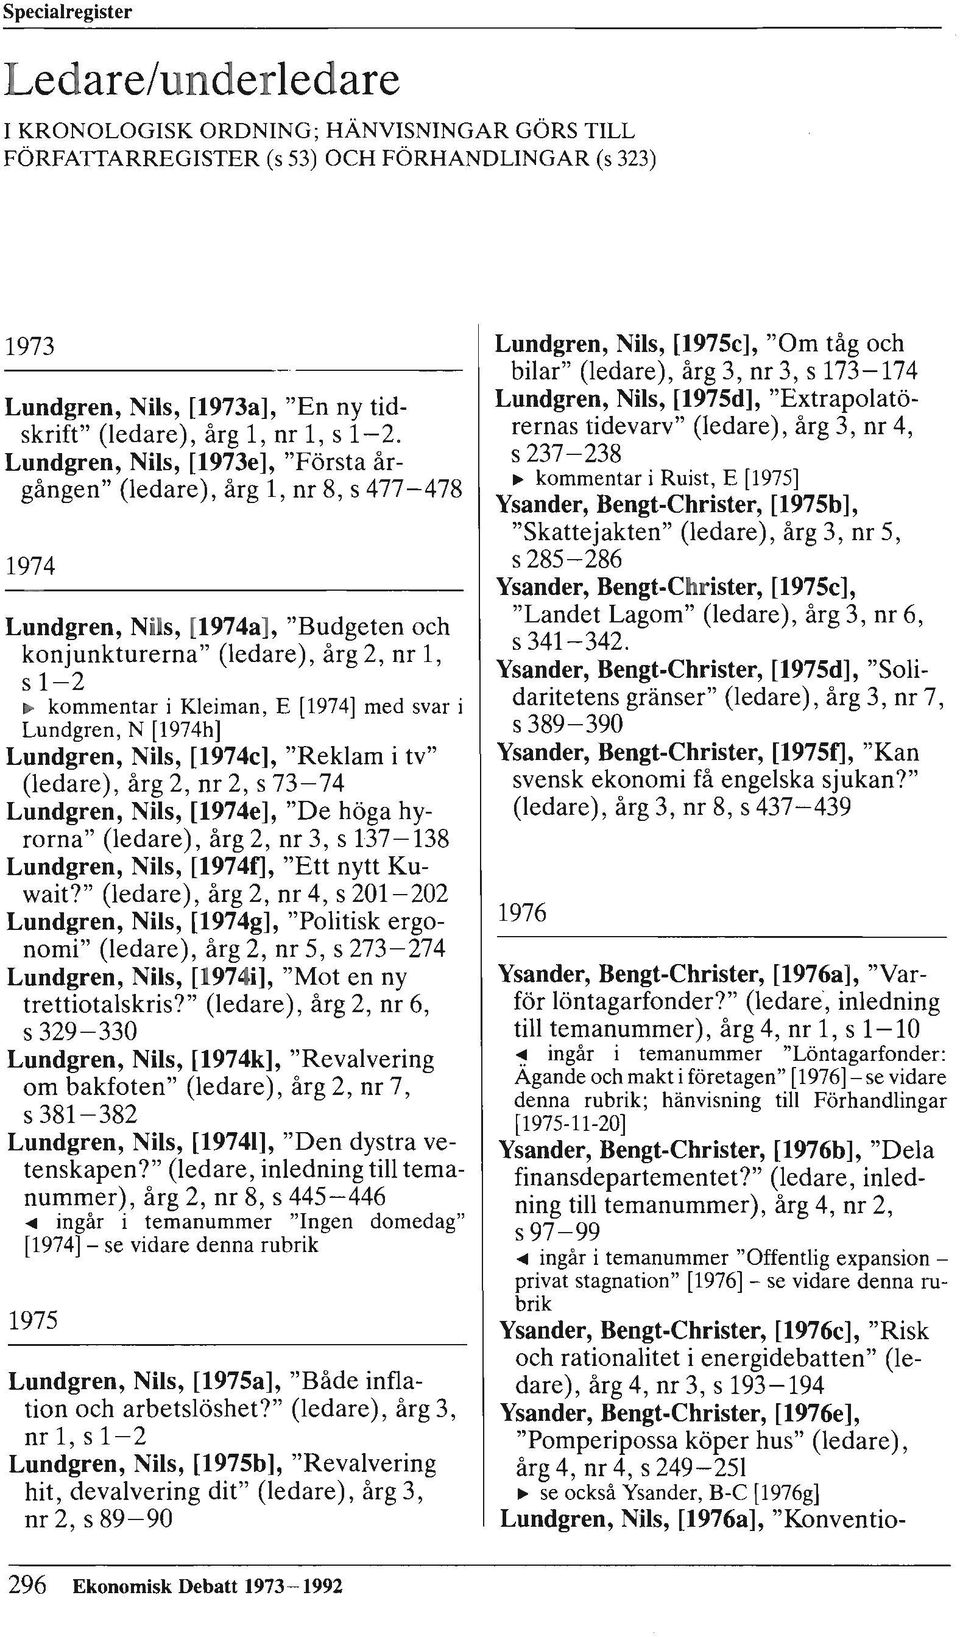 Lundgren, Nils, [1973e], "Första årgången" (ledare), årg 1, nr 8, s 477-478 1974 Lundgren, Nils, [1974a], "Budgeten och konjunkturerna" (ledare), årg 2, nr 1, sl-2 ~ kommentar i Kleiman, E [1974] med